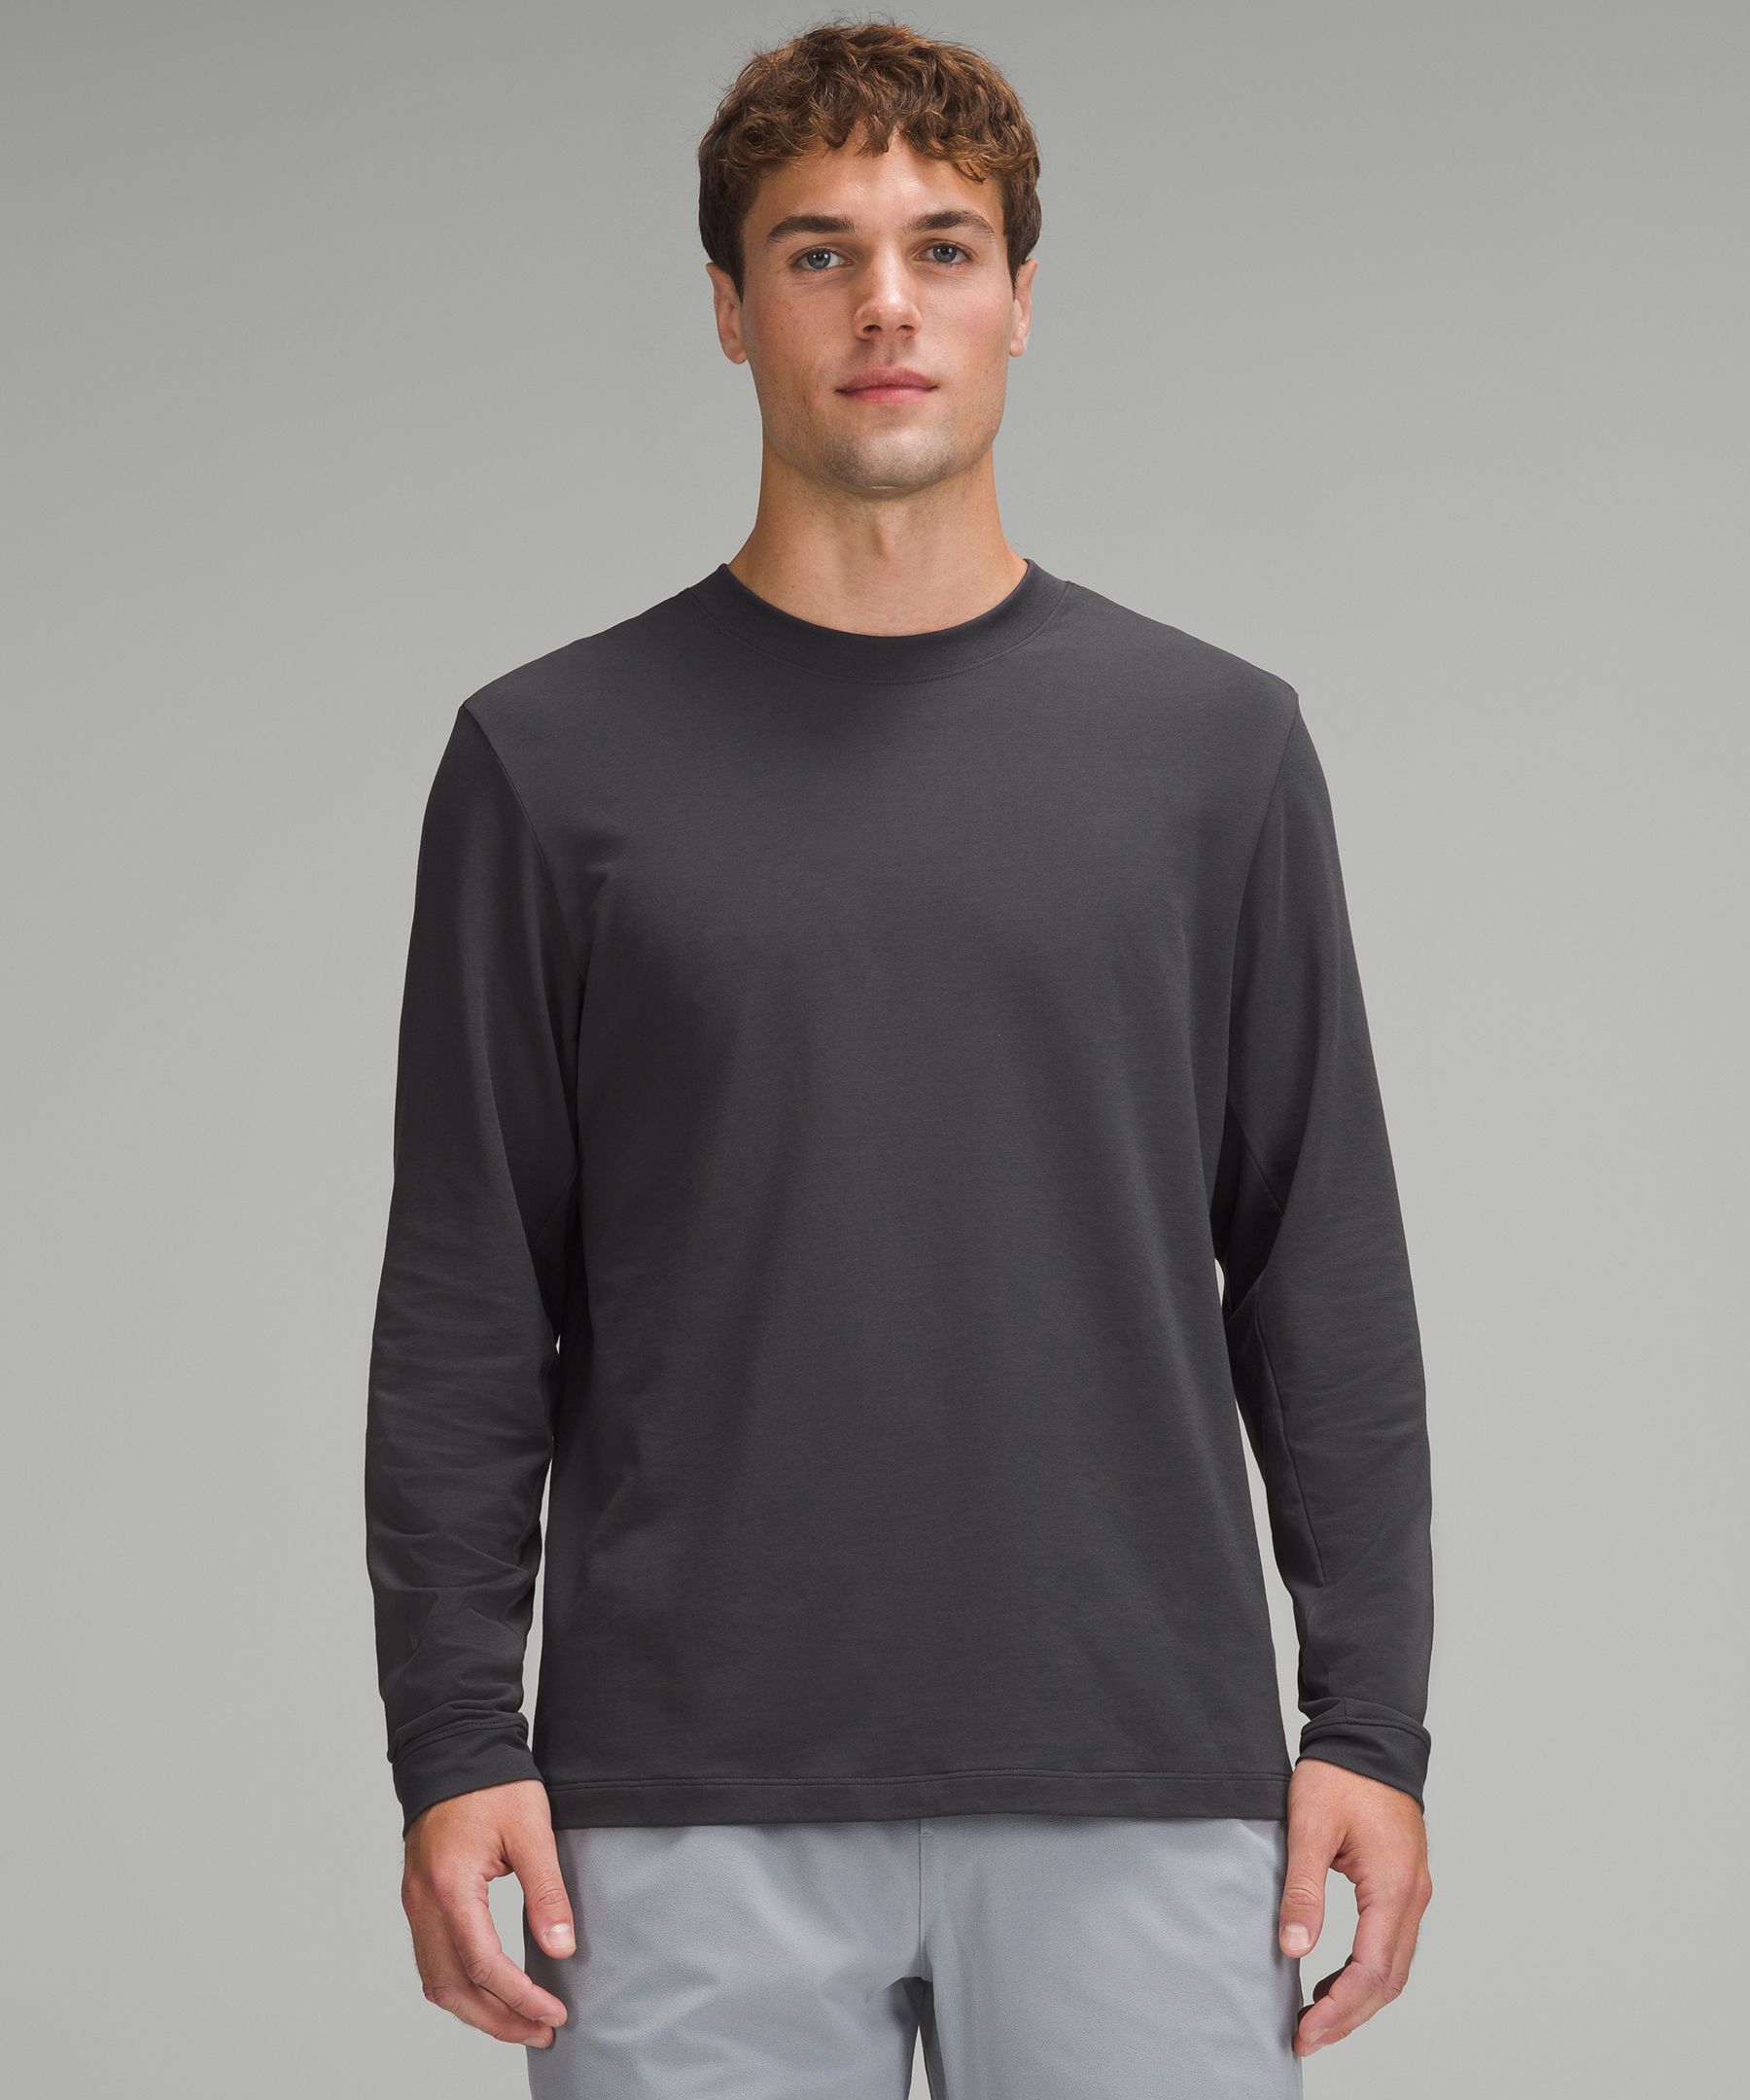 Zeroed Long-Sleeve Shirt | Men's Long Sleeve Shirts